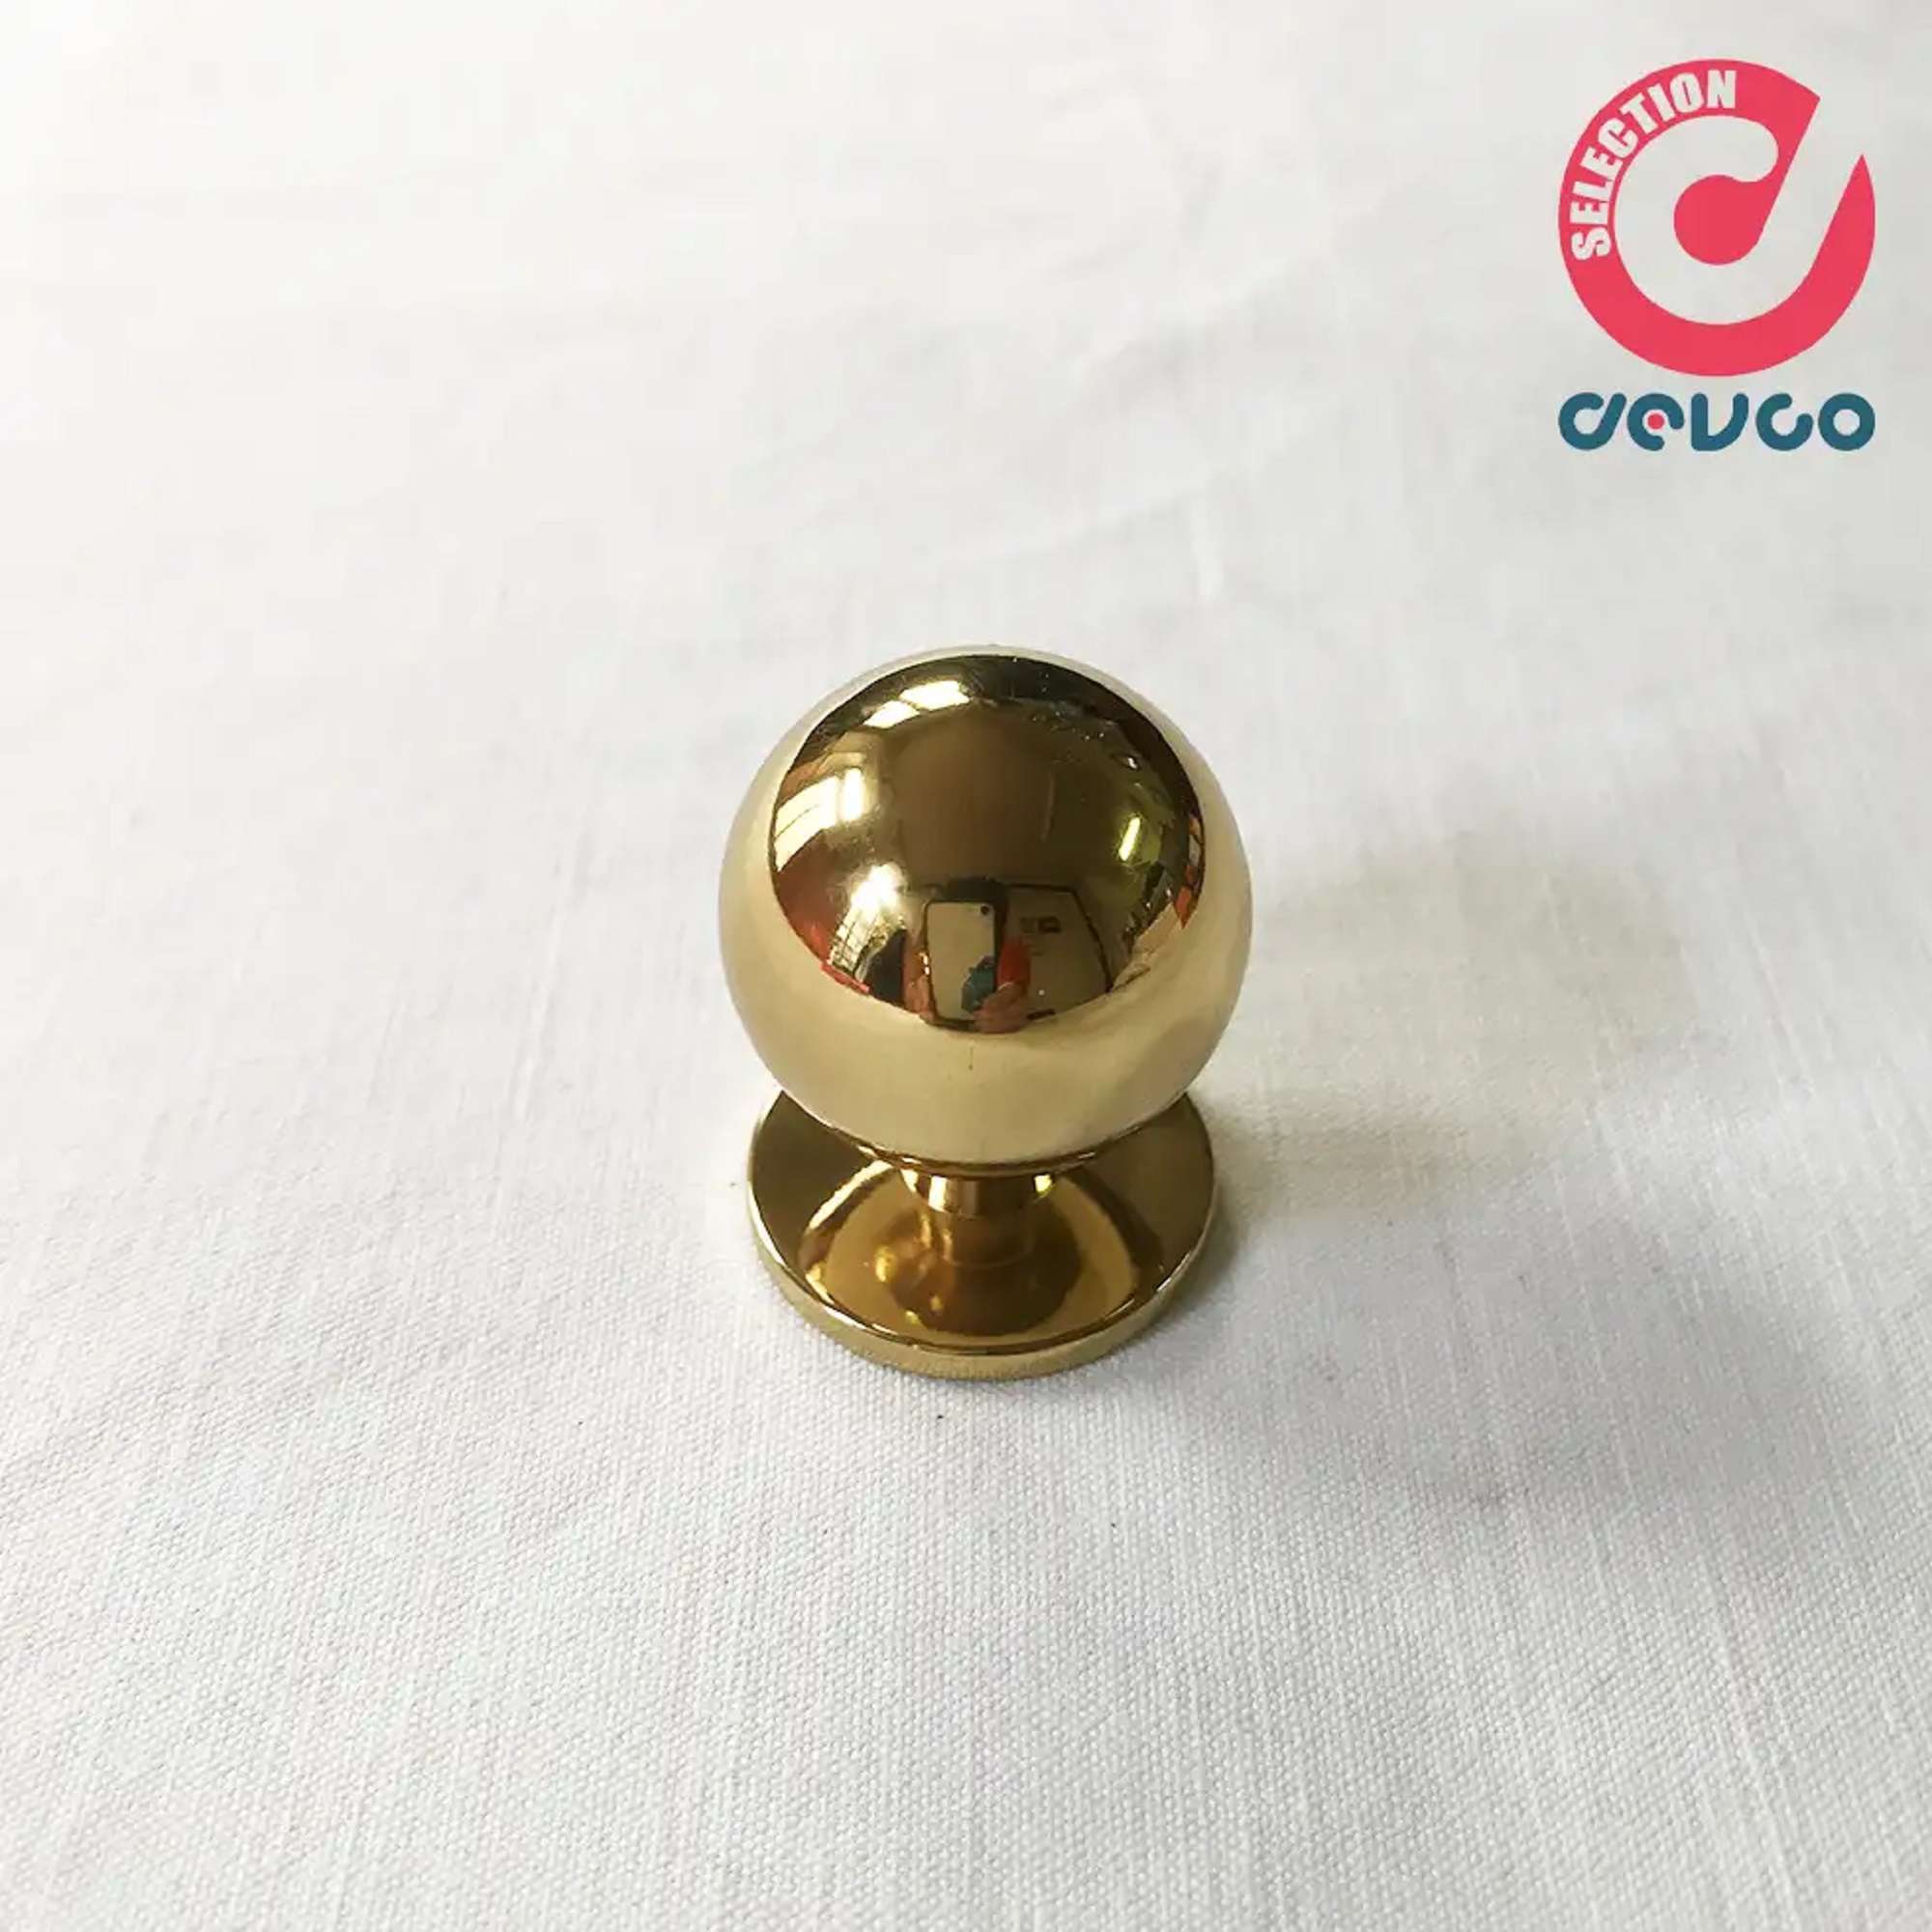 Knob size 15 gold color  Omp Porro - 0165 - 15